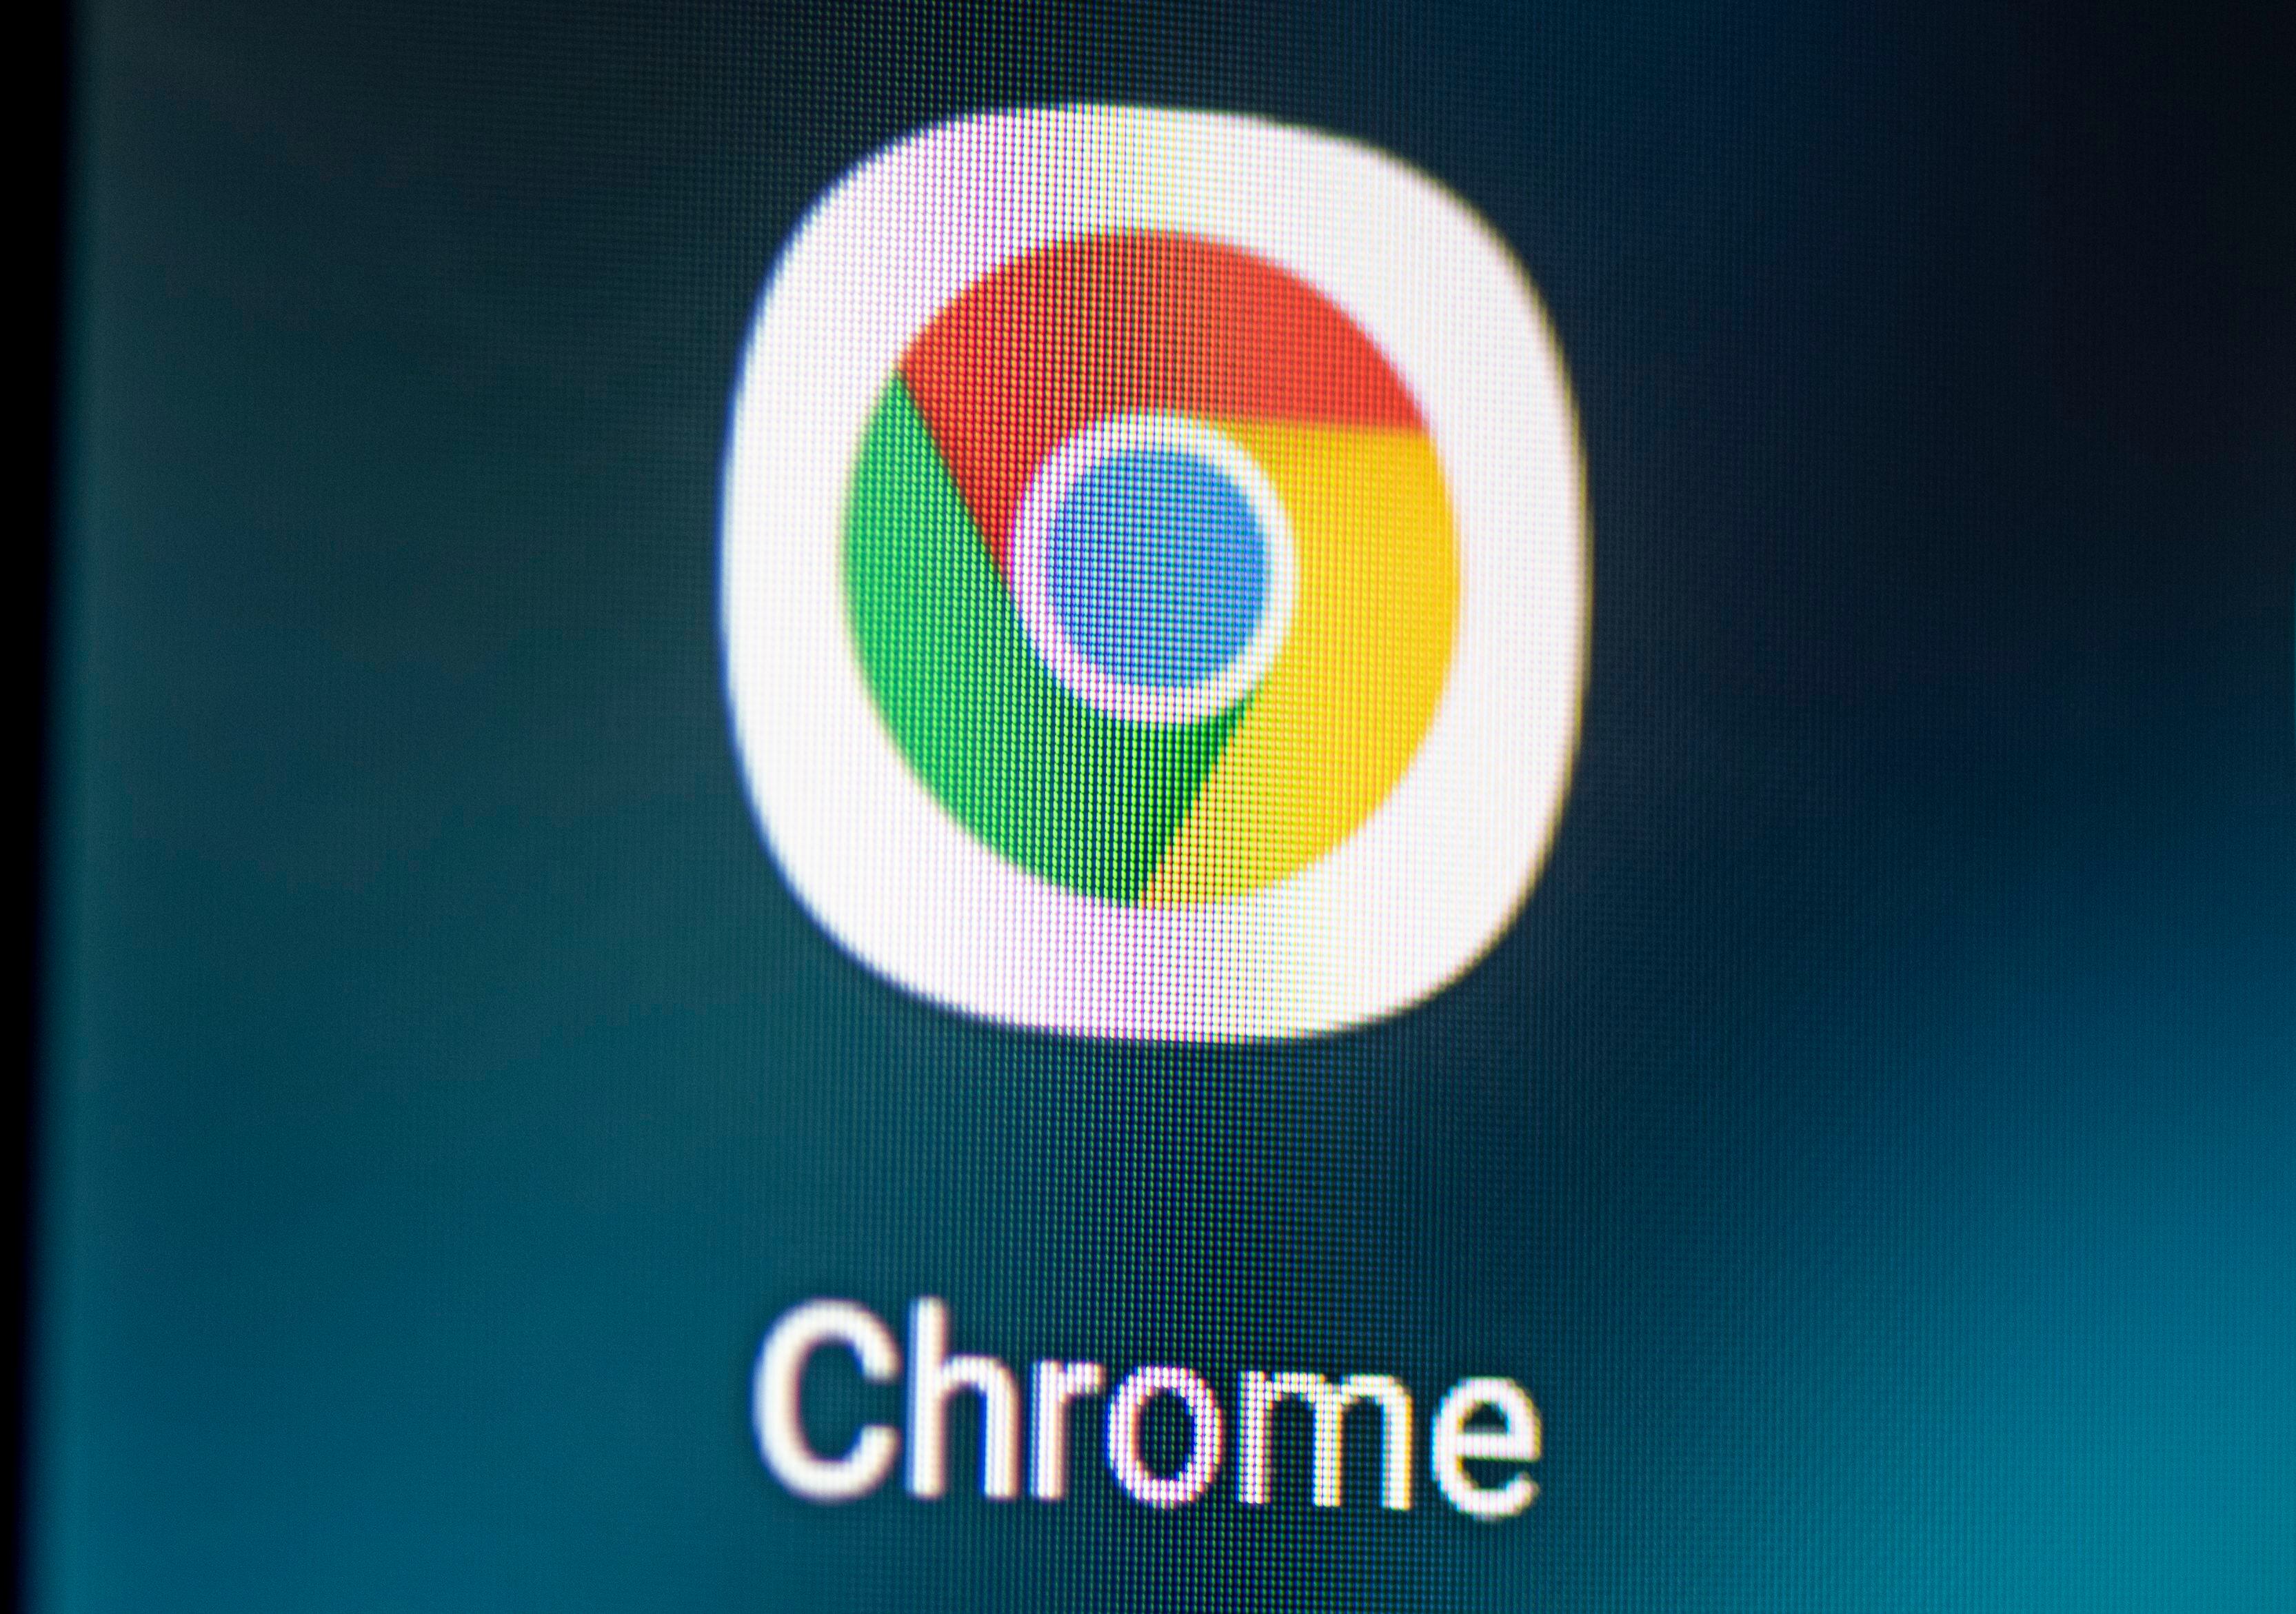 Google Chrome es el navegador web más usado en el mundo en computadores y dispositivos móviles. (dpa)